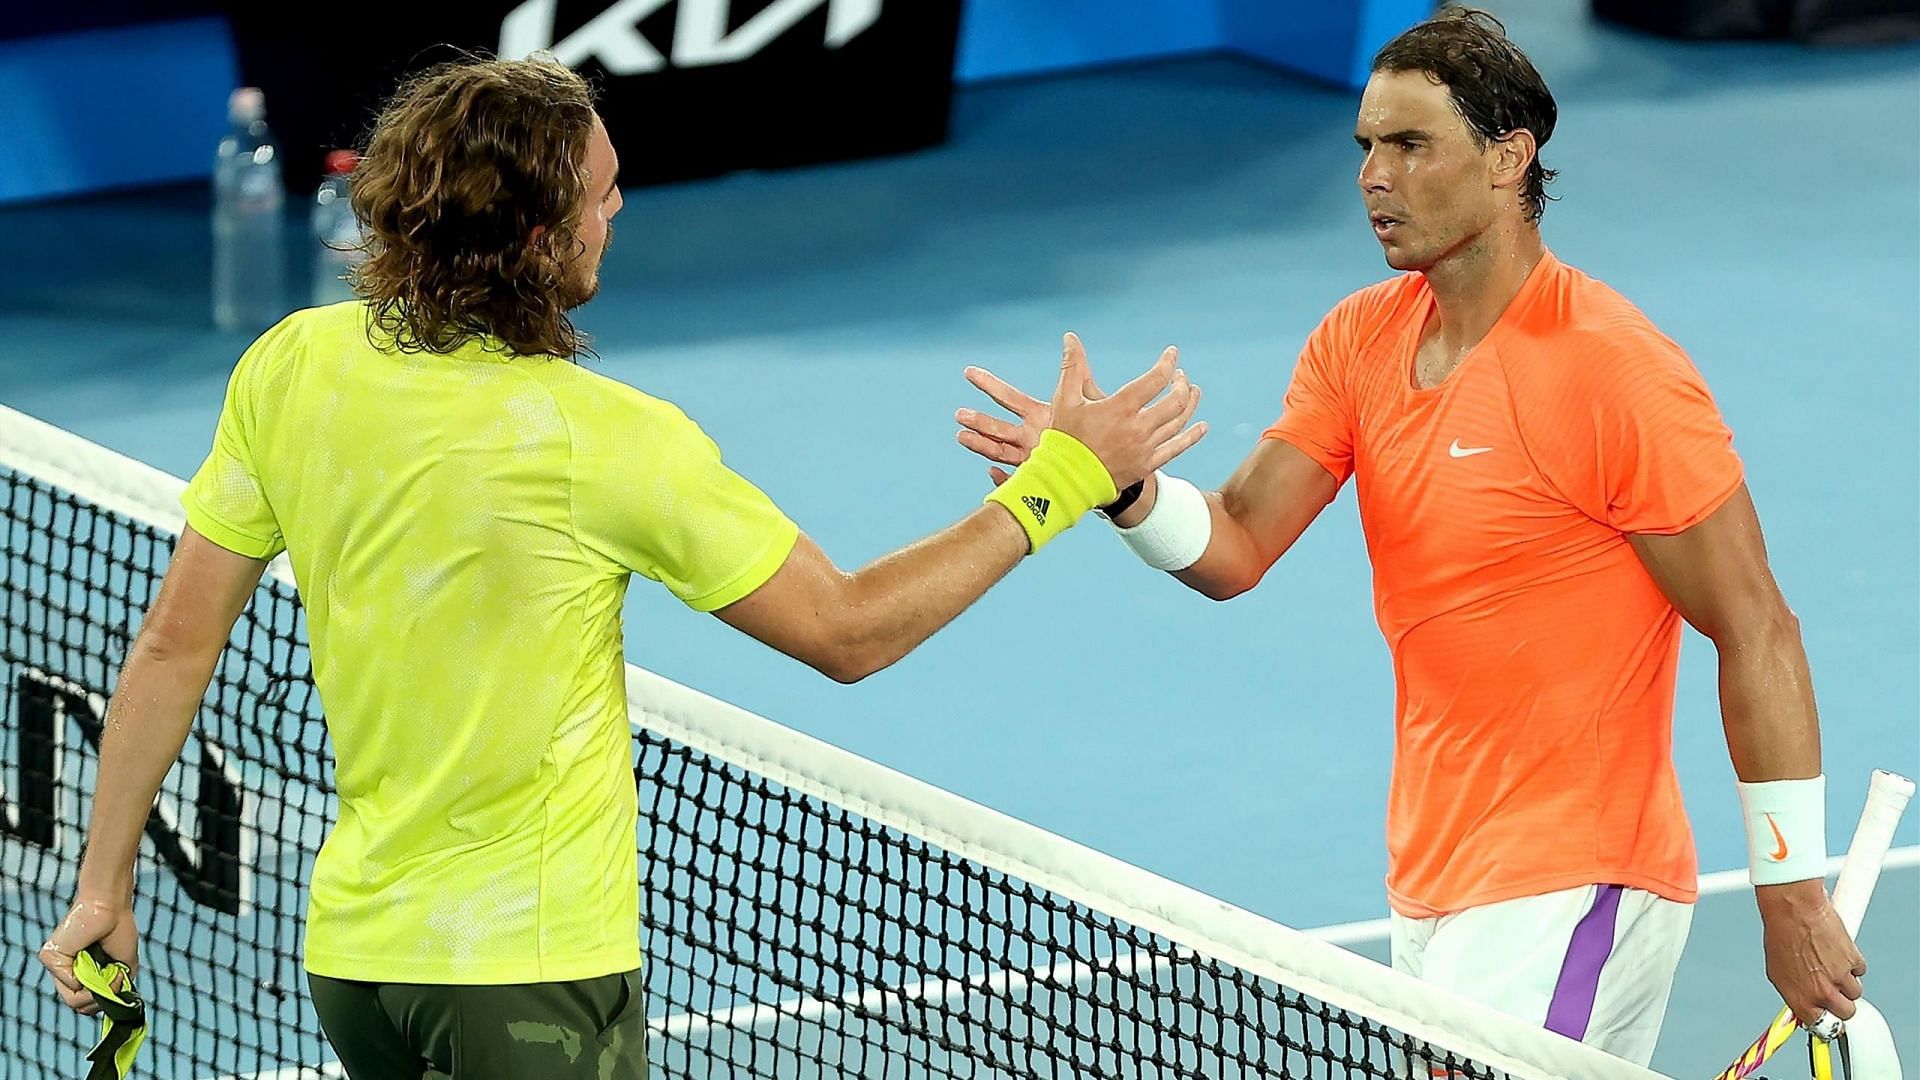 Stefanos Tsitsipas and Rafael Nadal greet each other after their 2021 Australian Open quarterfinal match